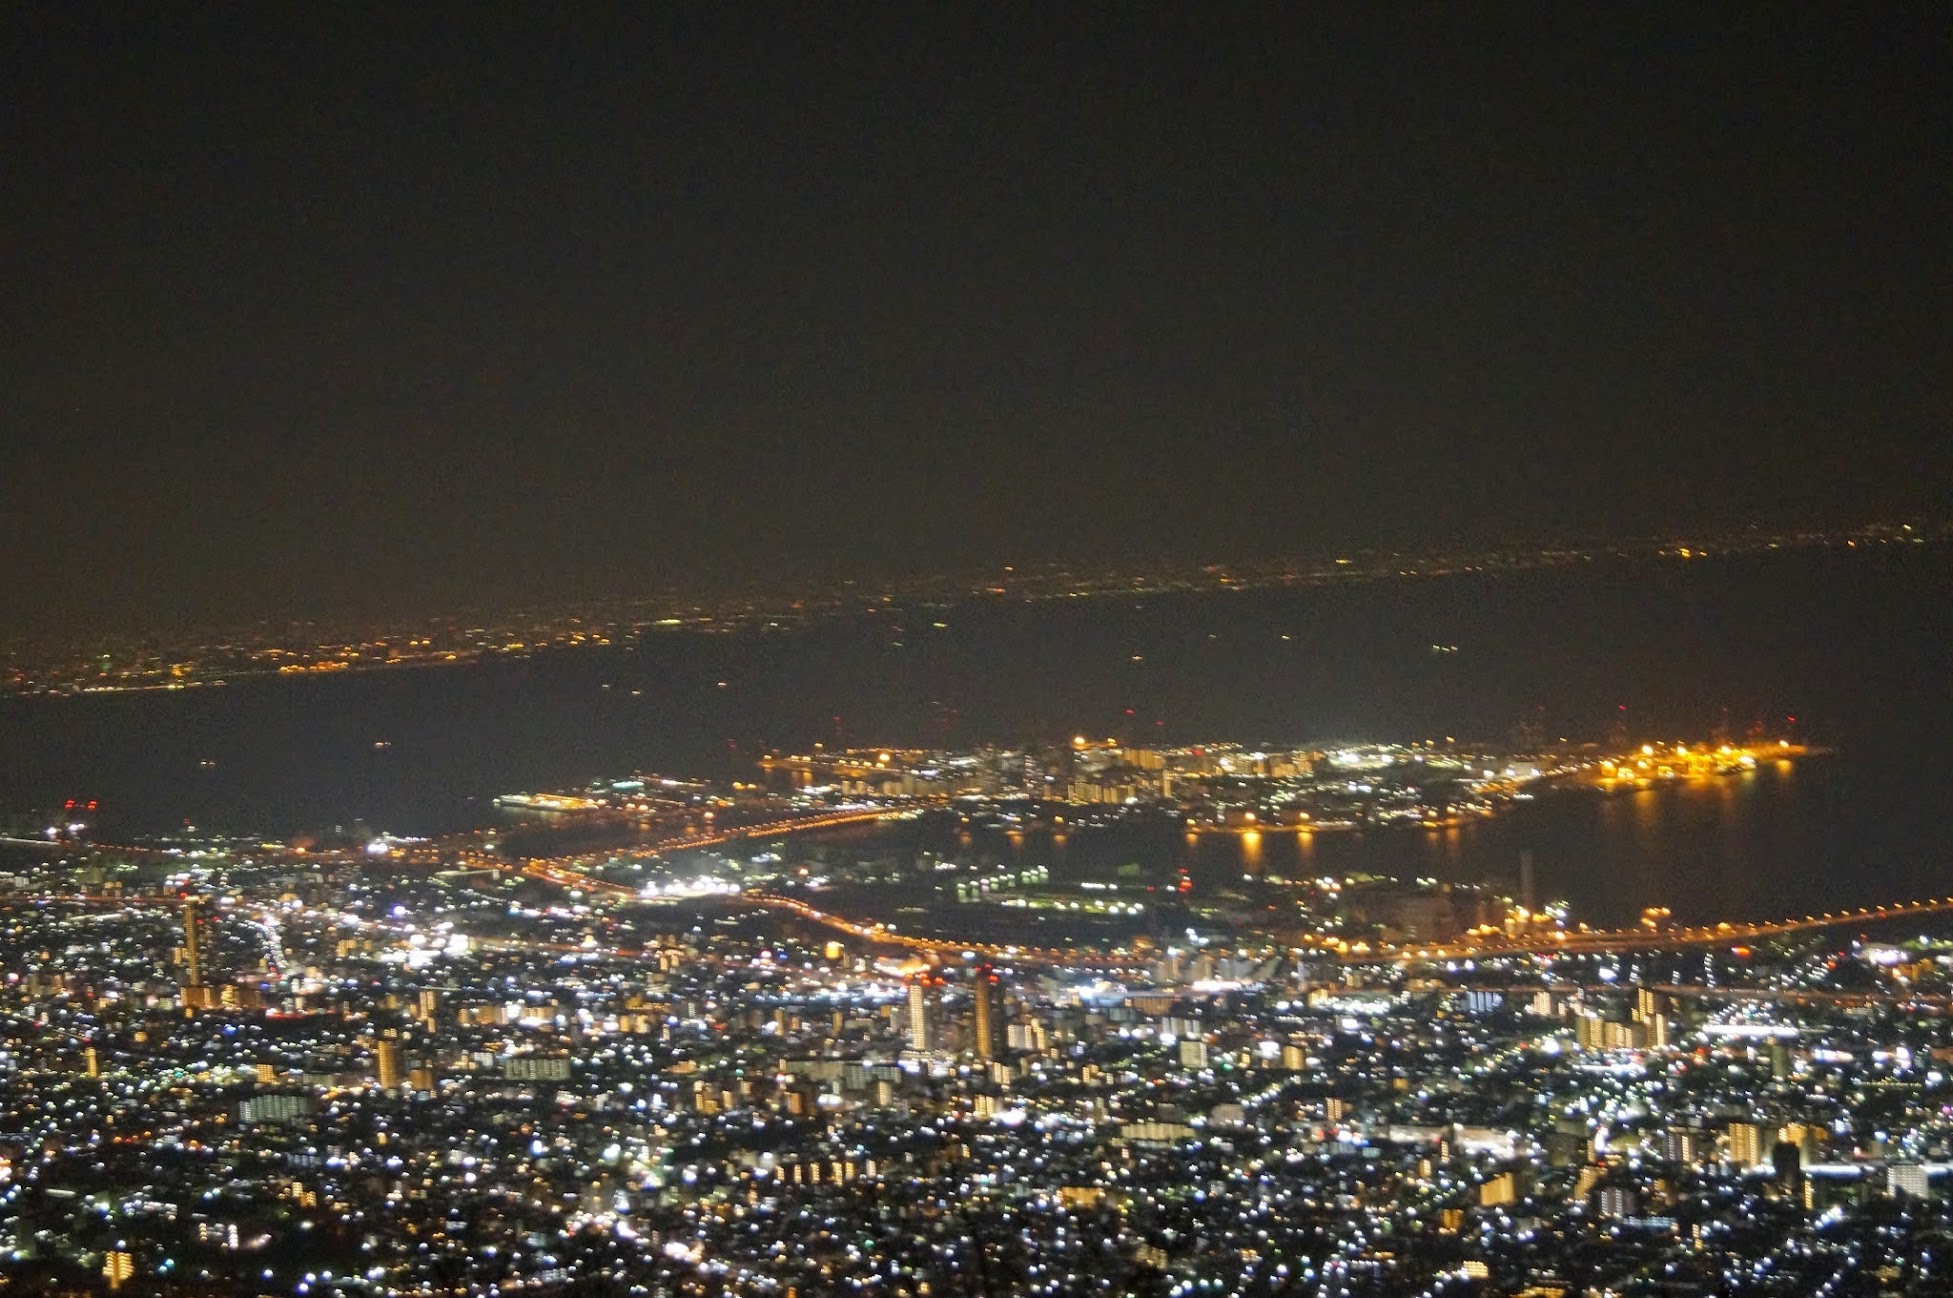 Kobe Tourism Life 神戸観光生活 神戸100万ドルの夜景